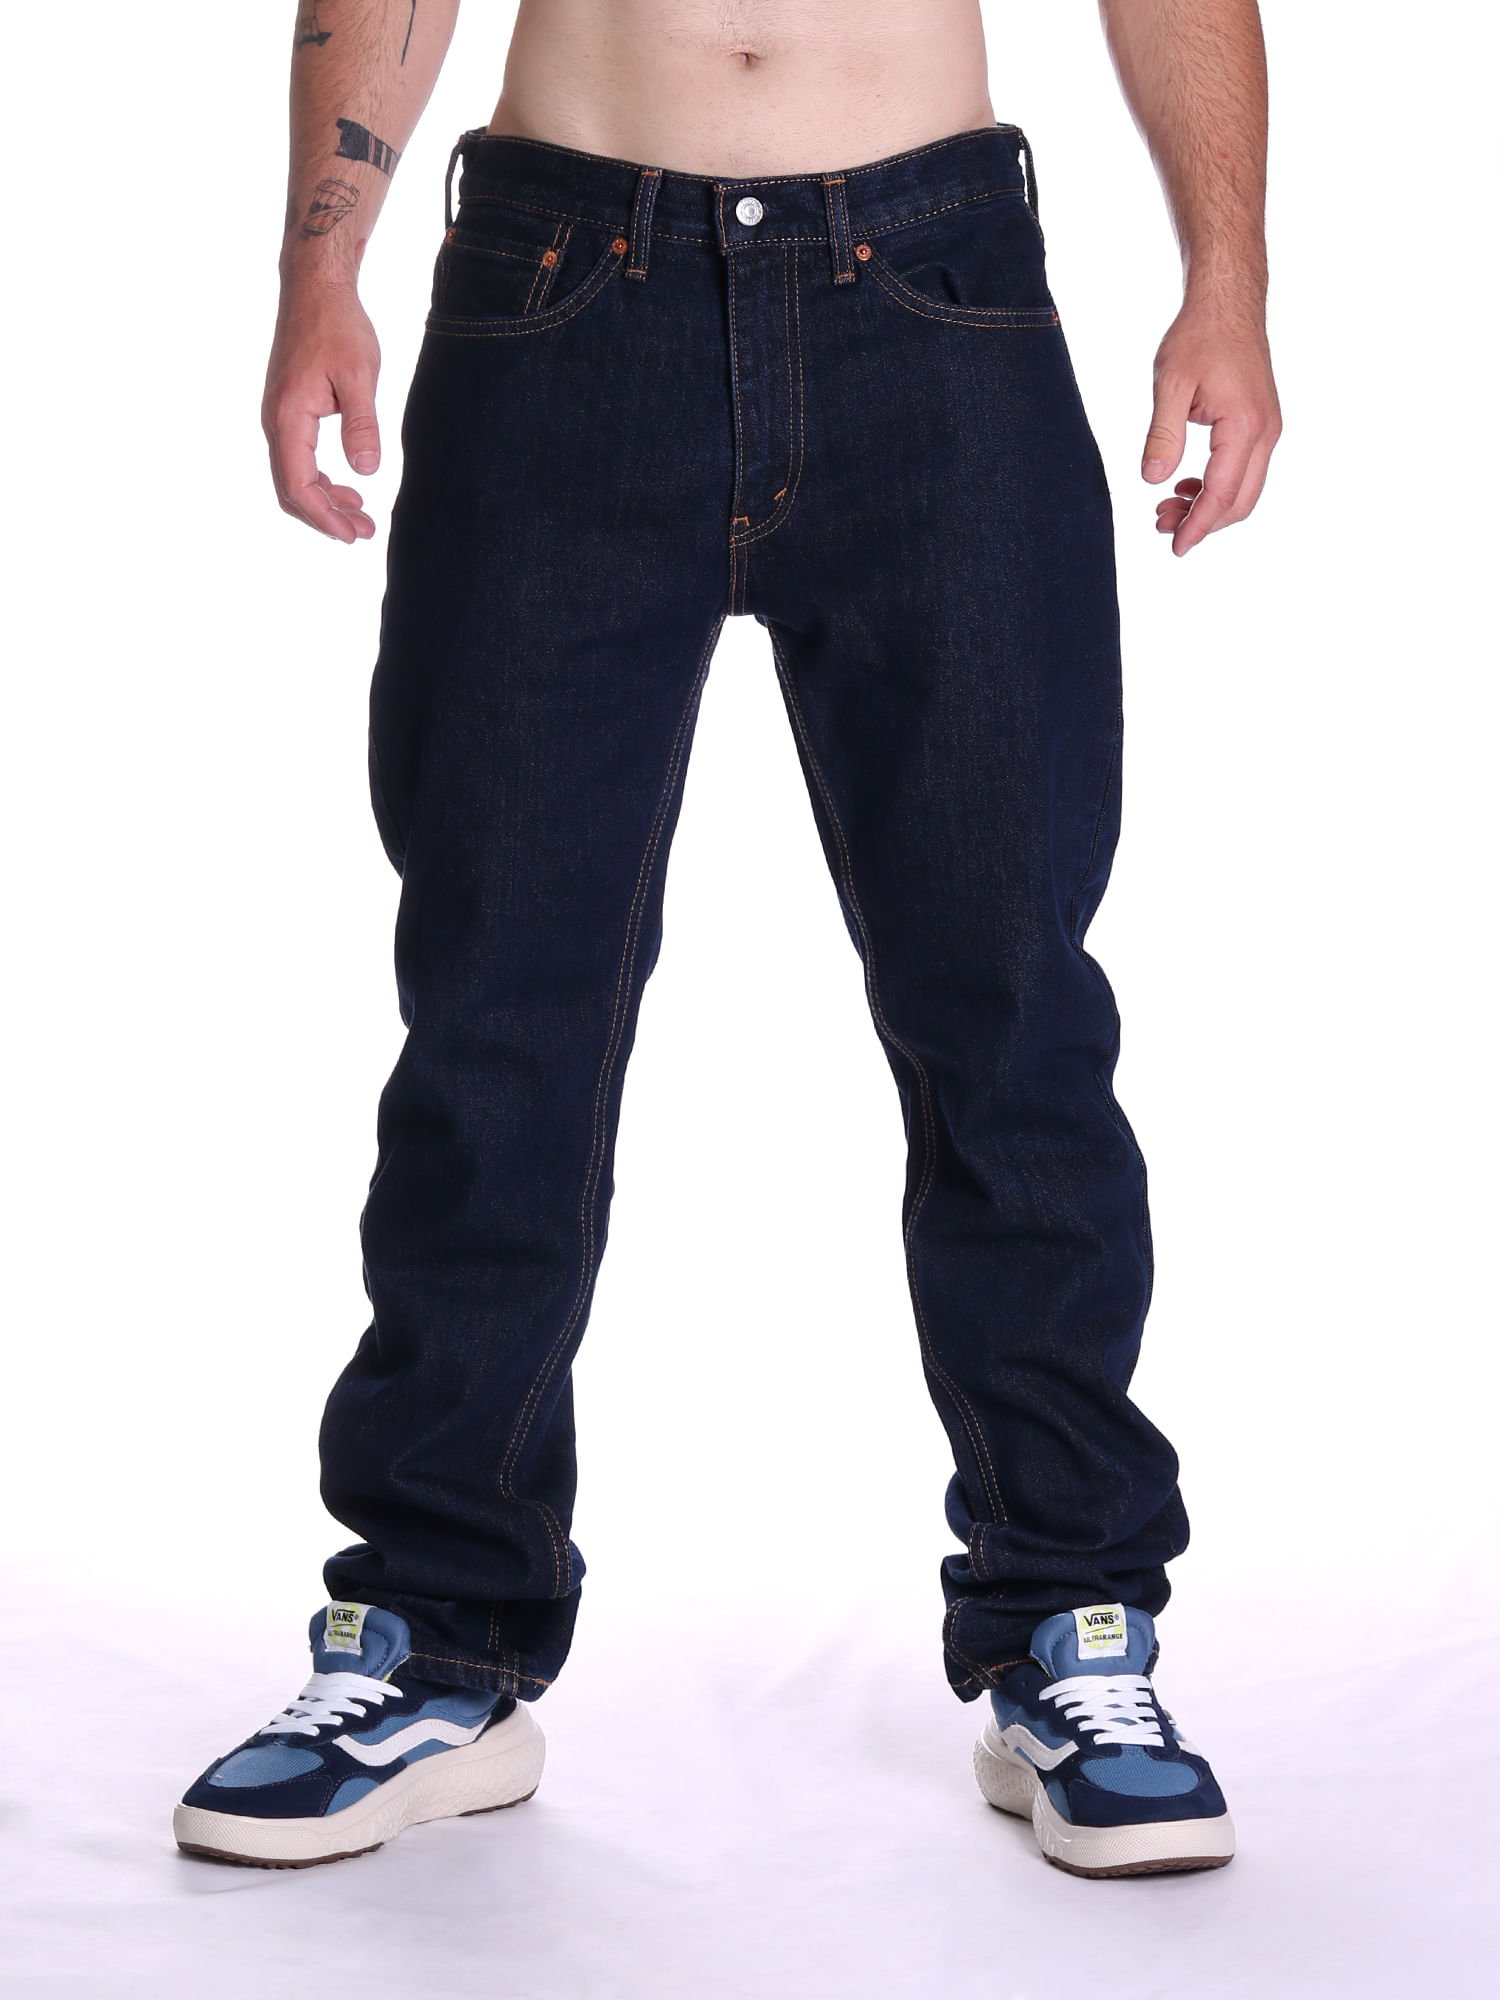 Calça Jeans Levis Masculina Corte Tradicional (Com Botão) - Ref. 501-0 -  FIDALGOS